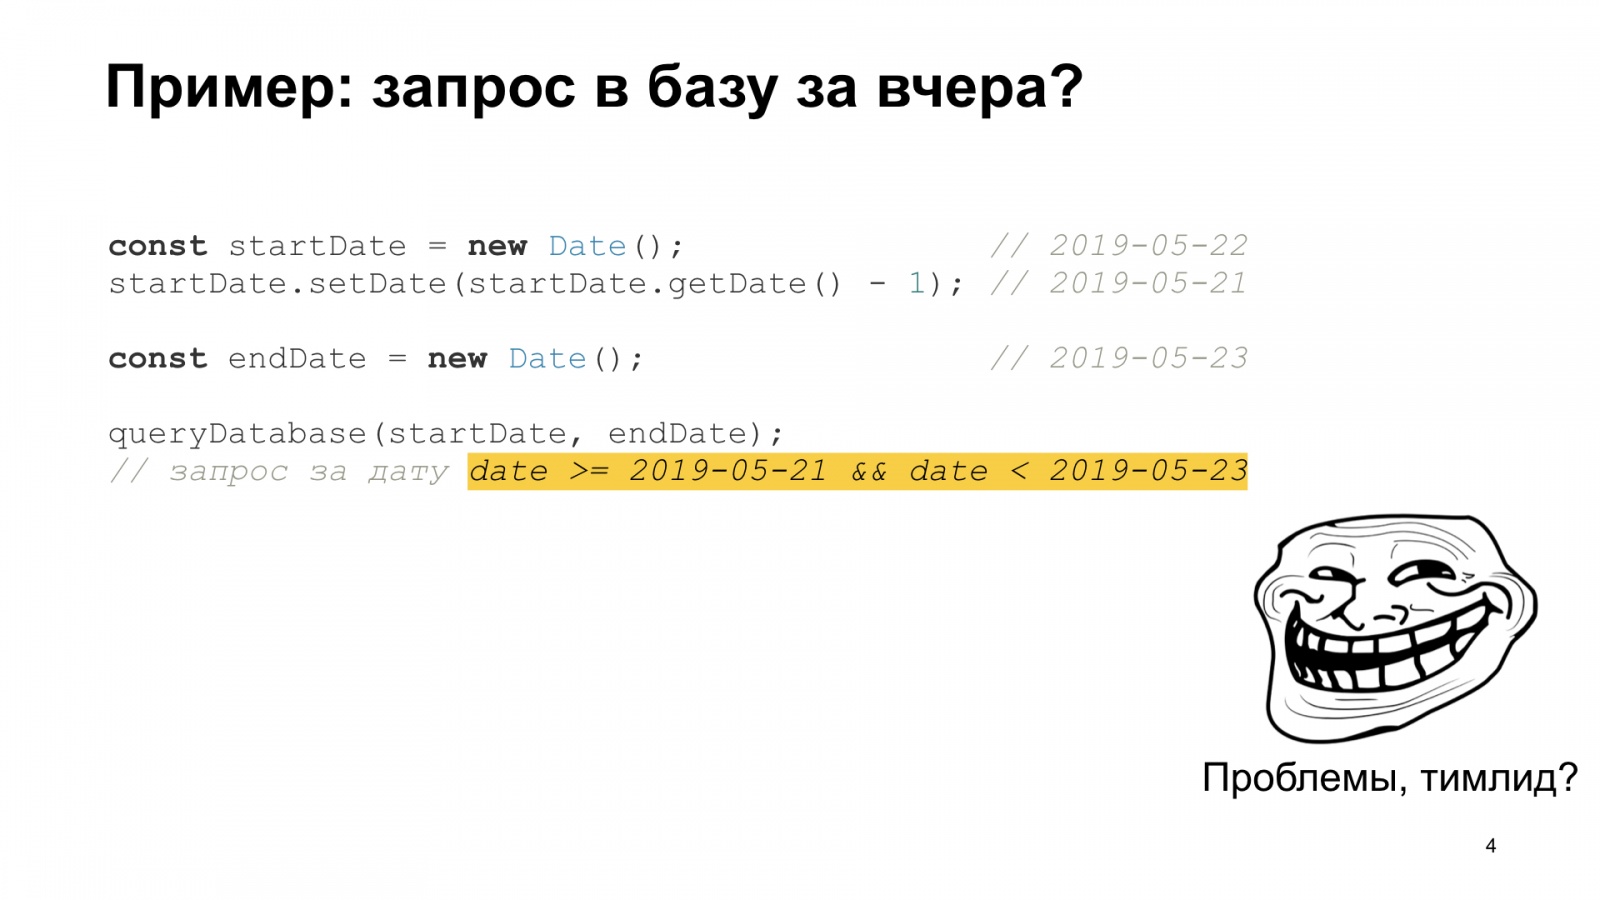 Тяжёлое бремя времени. Доклад Яндекса о типичных ошибках в работе со временем - 4